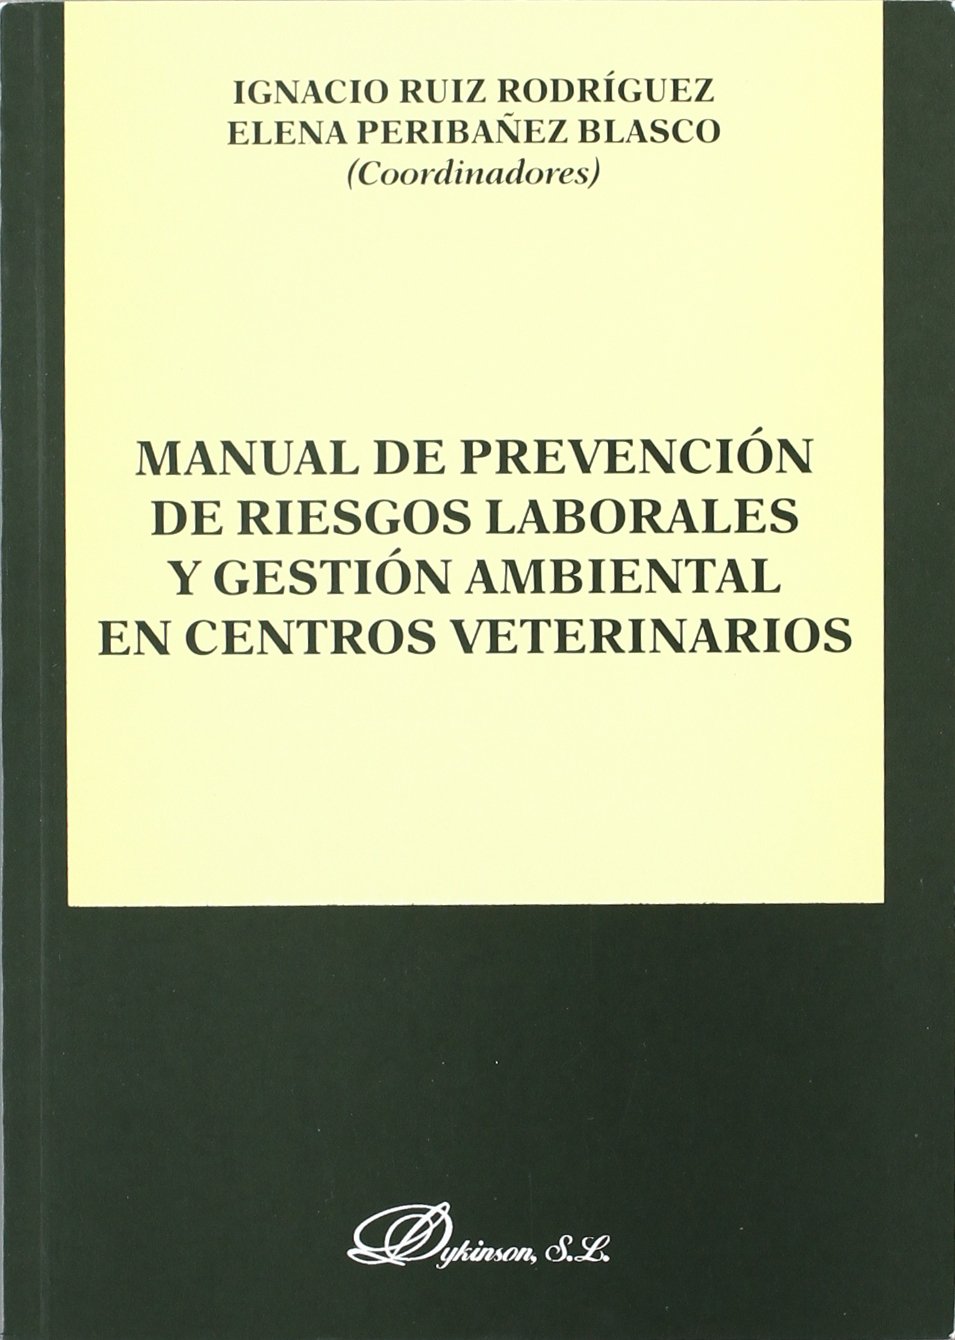 Manual de prevención de riesgos laborales y gestión ambiental en centros veterinarios